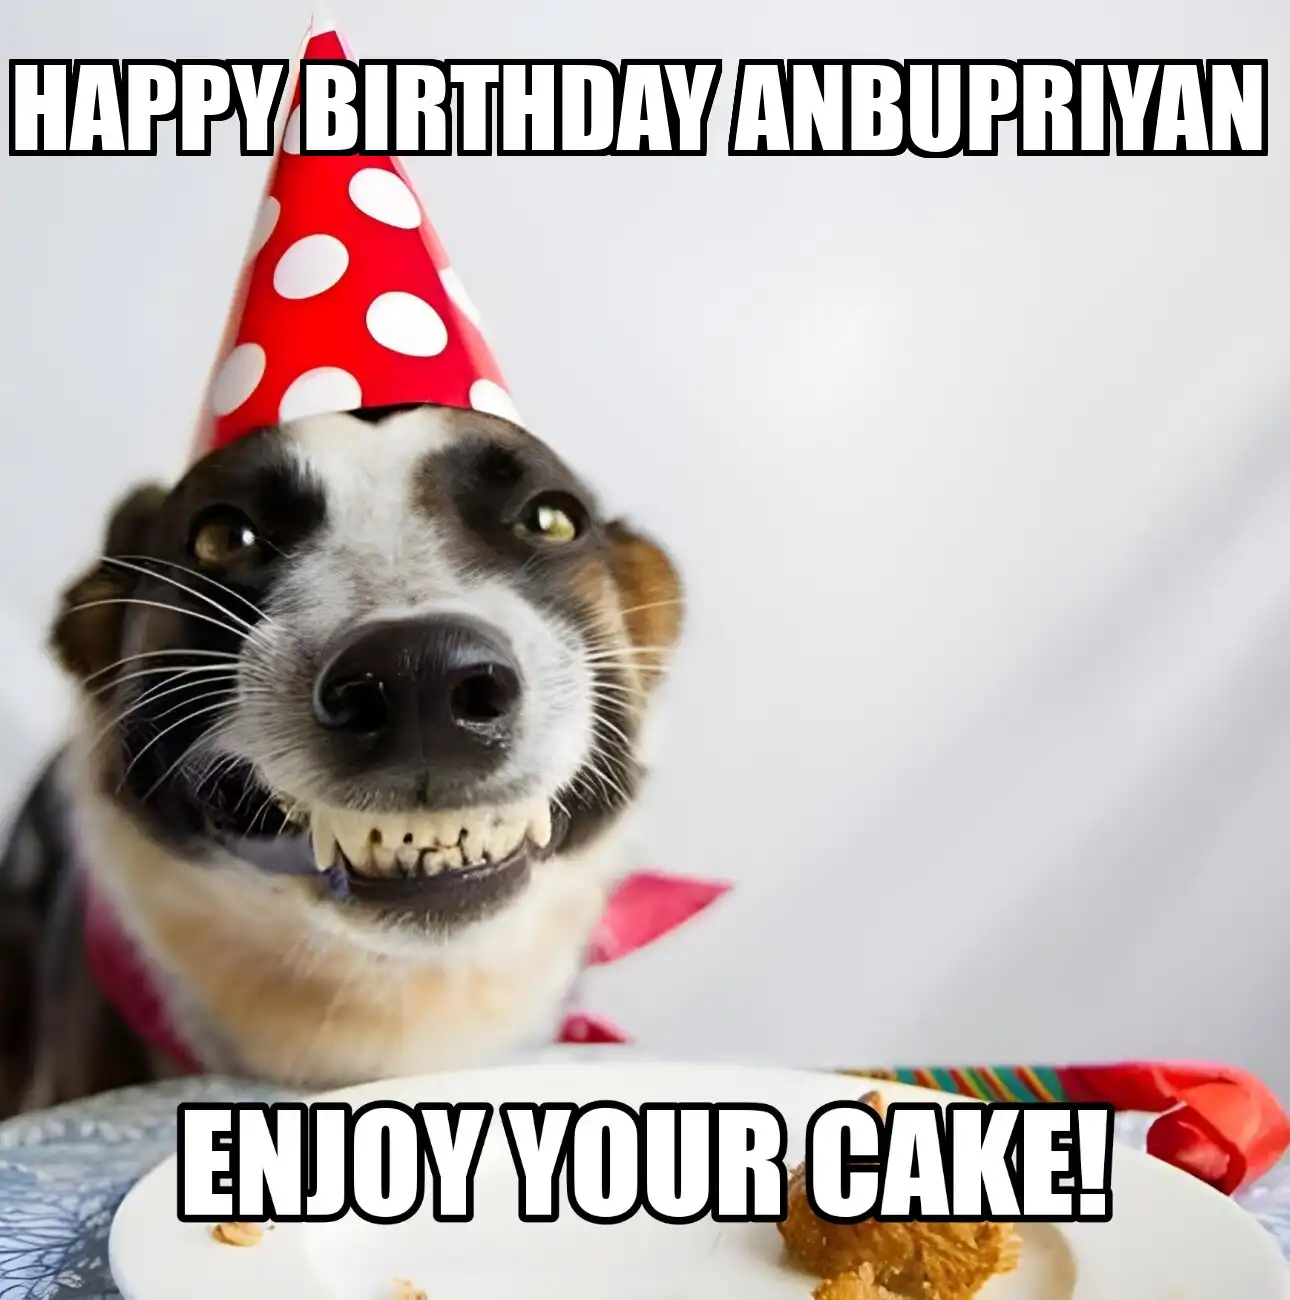 Happy Birthday Anbupriyan Enjoy Your Cake Dog Meme